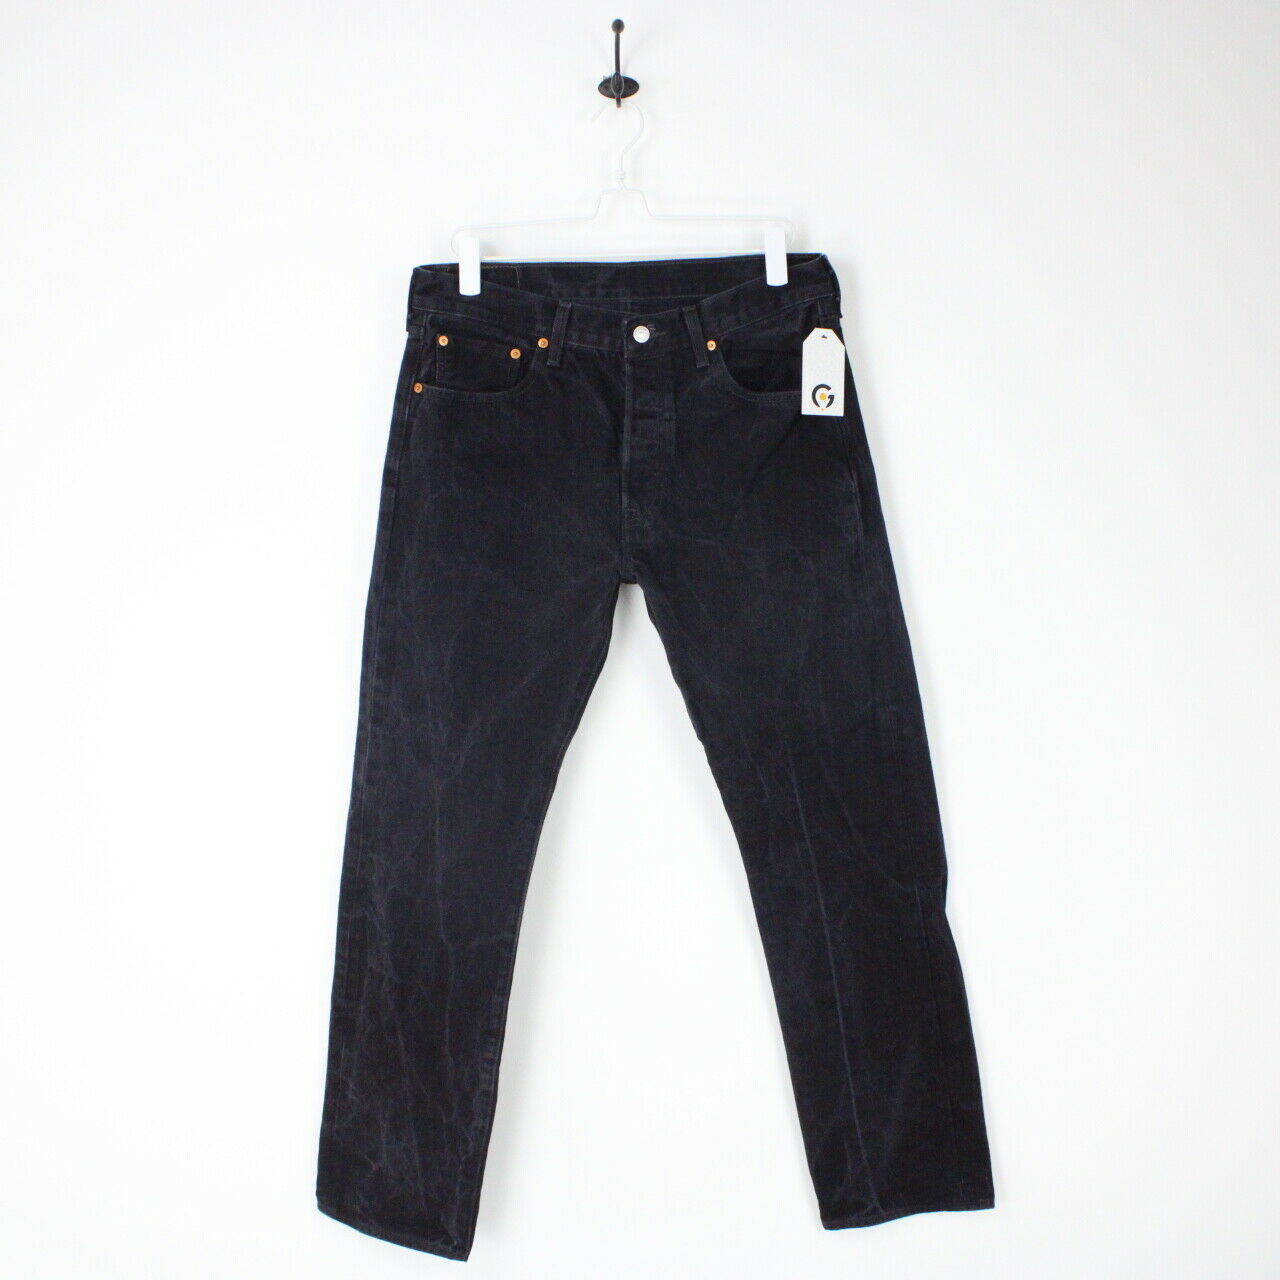 Mens LEVIS 501 Jeans Black Charcoal | W33 L32